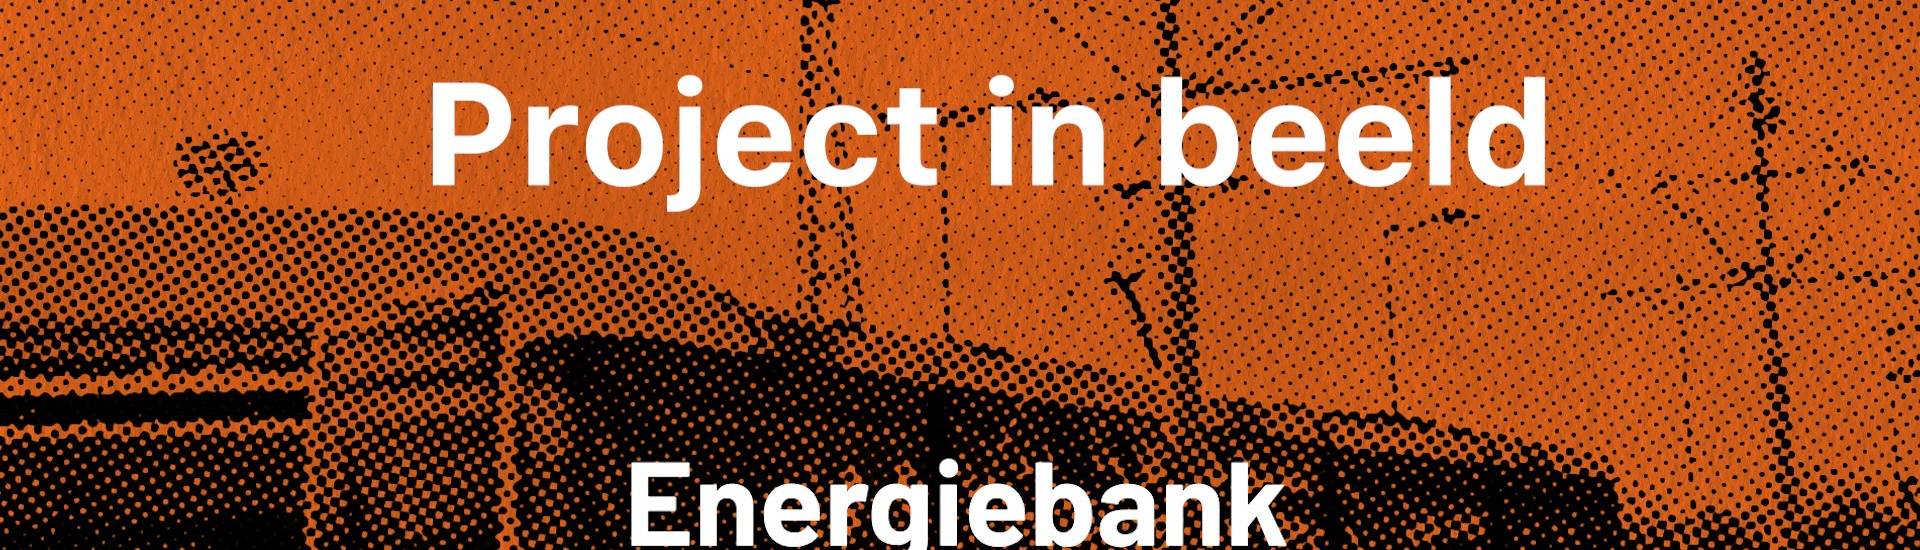 Energiebank